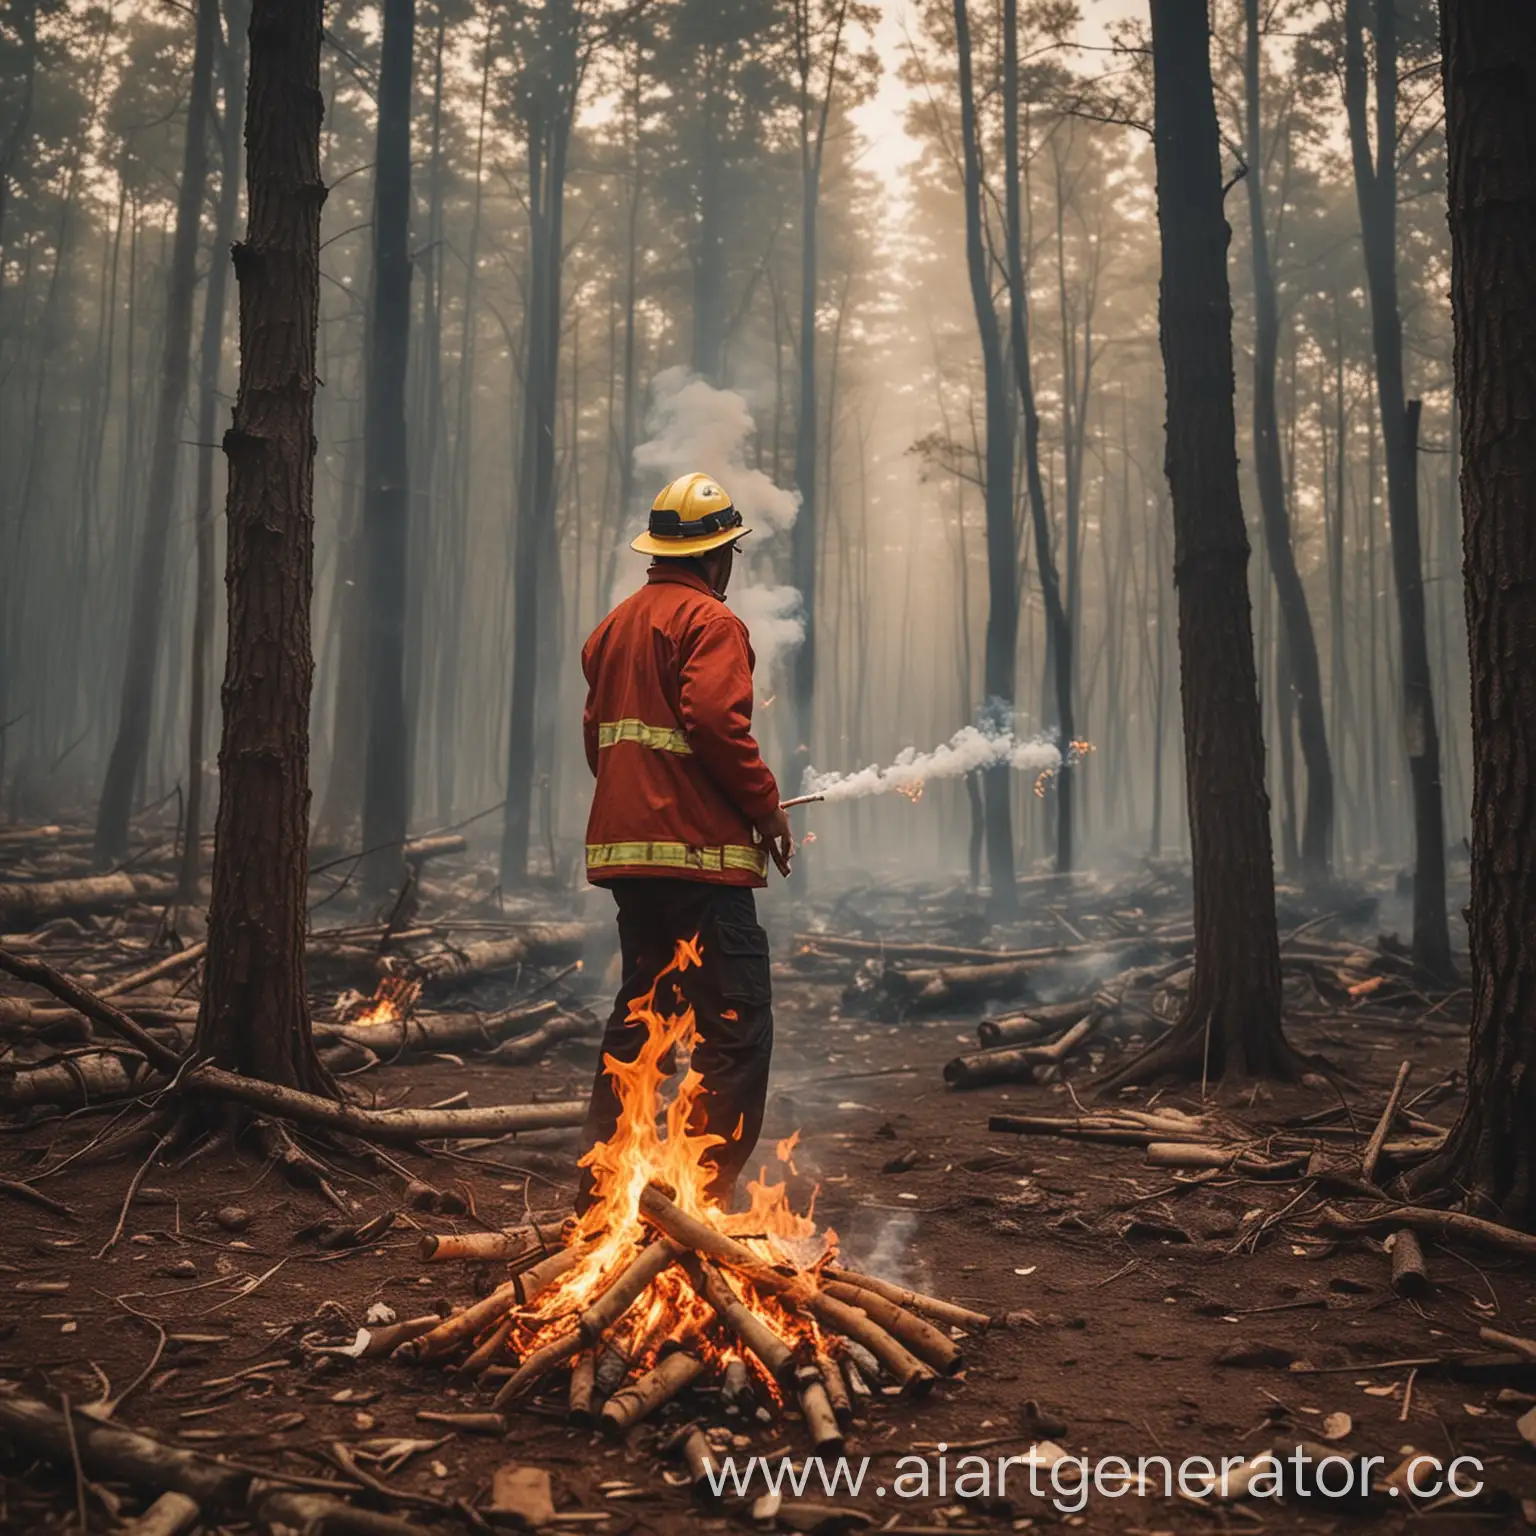 Сгенирируй картинку, мужчина кинул сигарету в лес и огонь начал сильно разгораться и картинка должна выглядеть как знак обучающий пожарной безопасности 